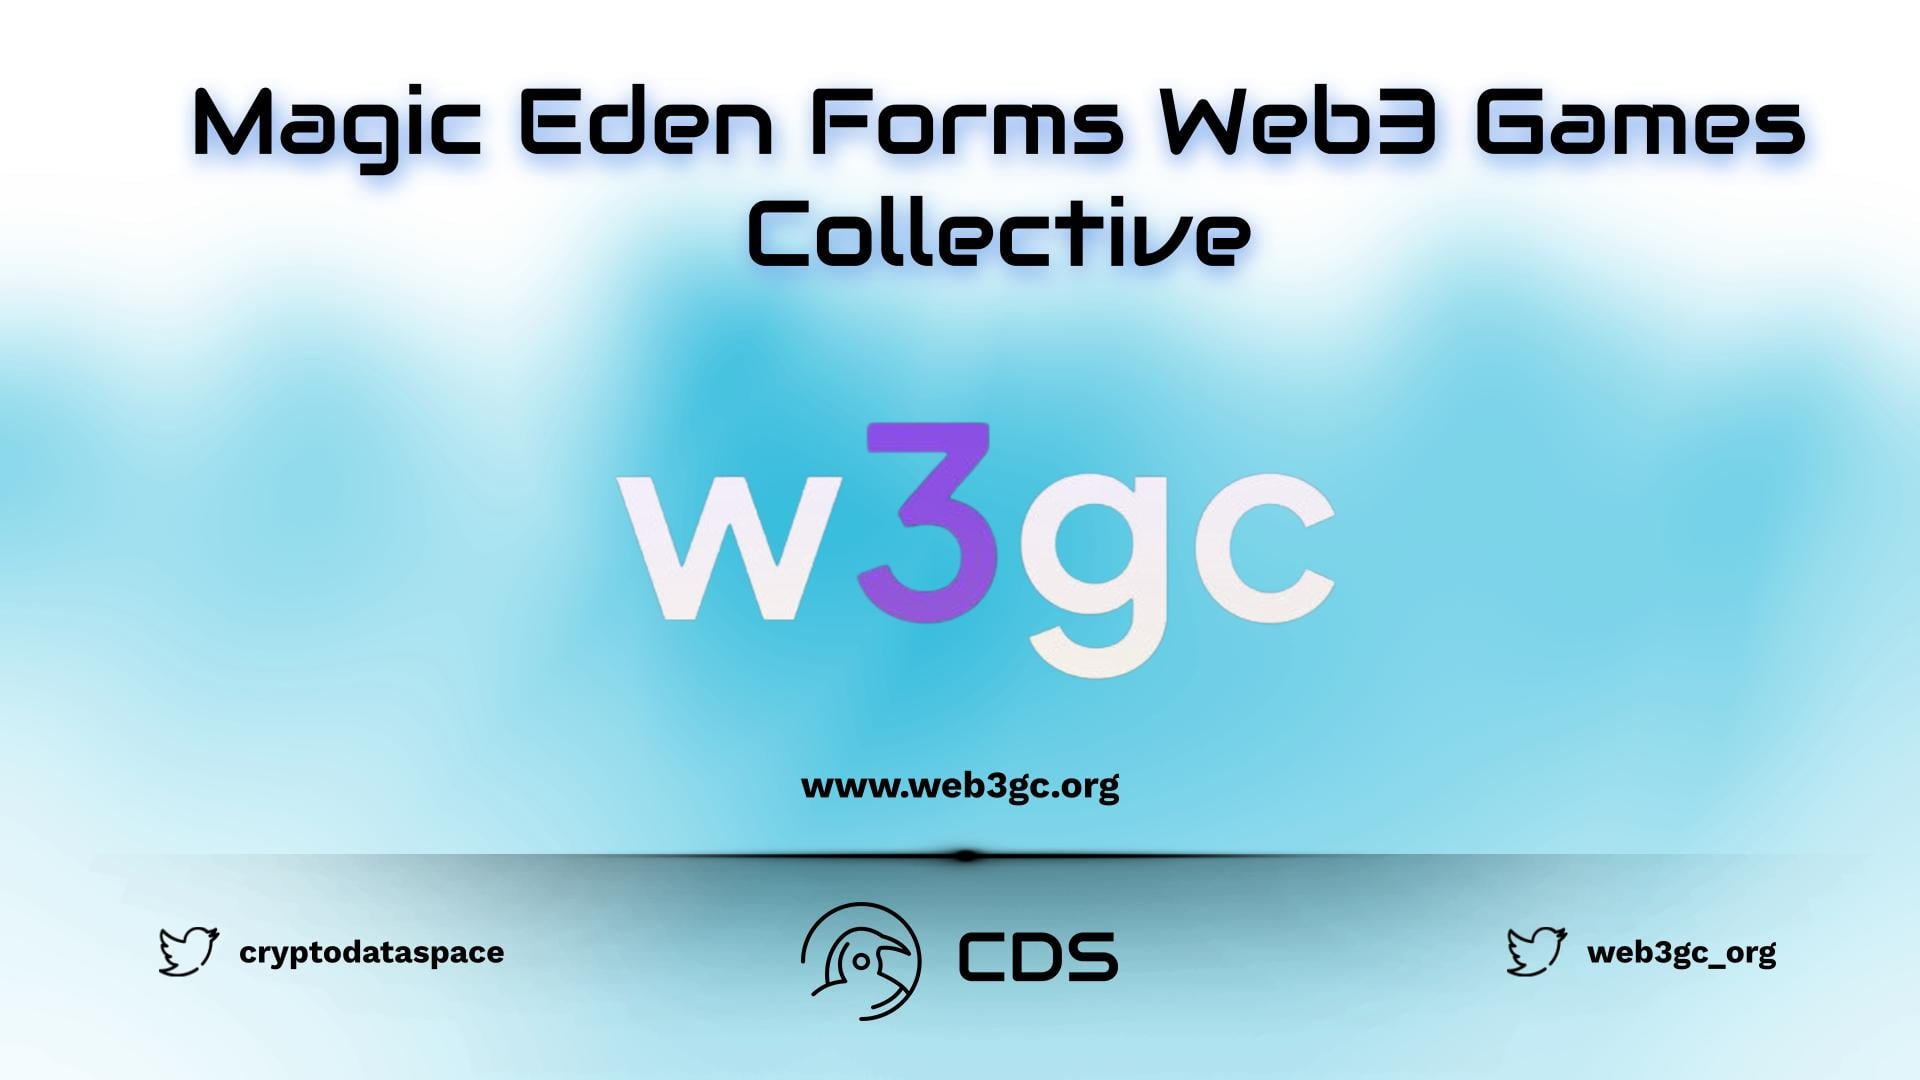 Magic Eden Forms Web3 Games Collective